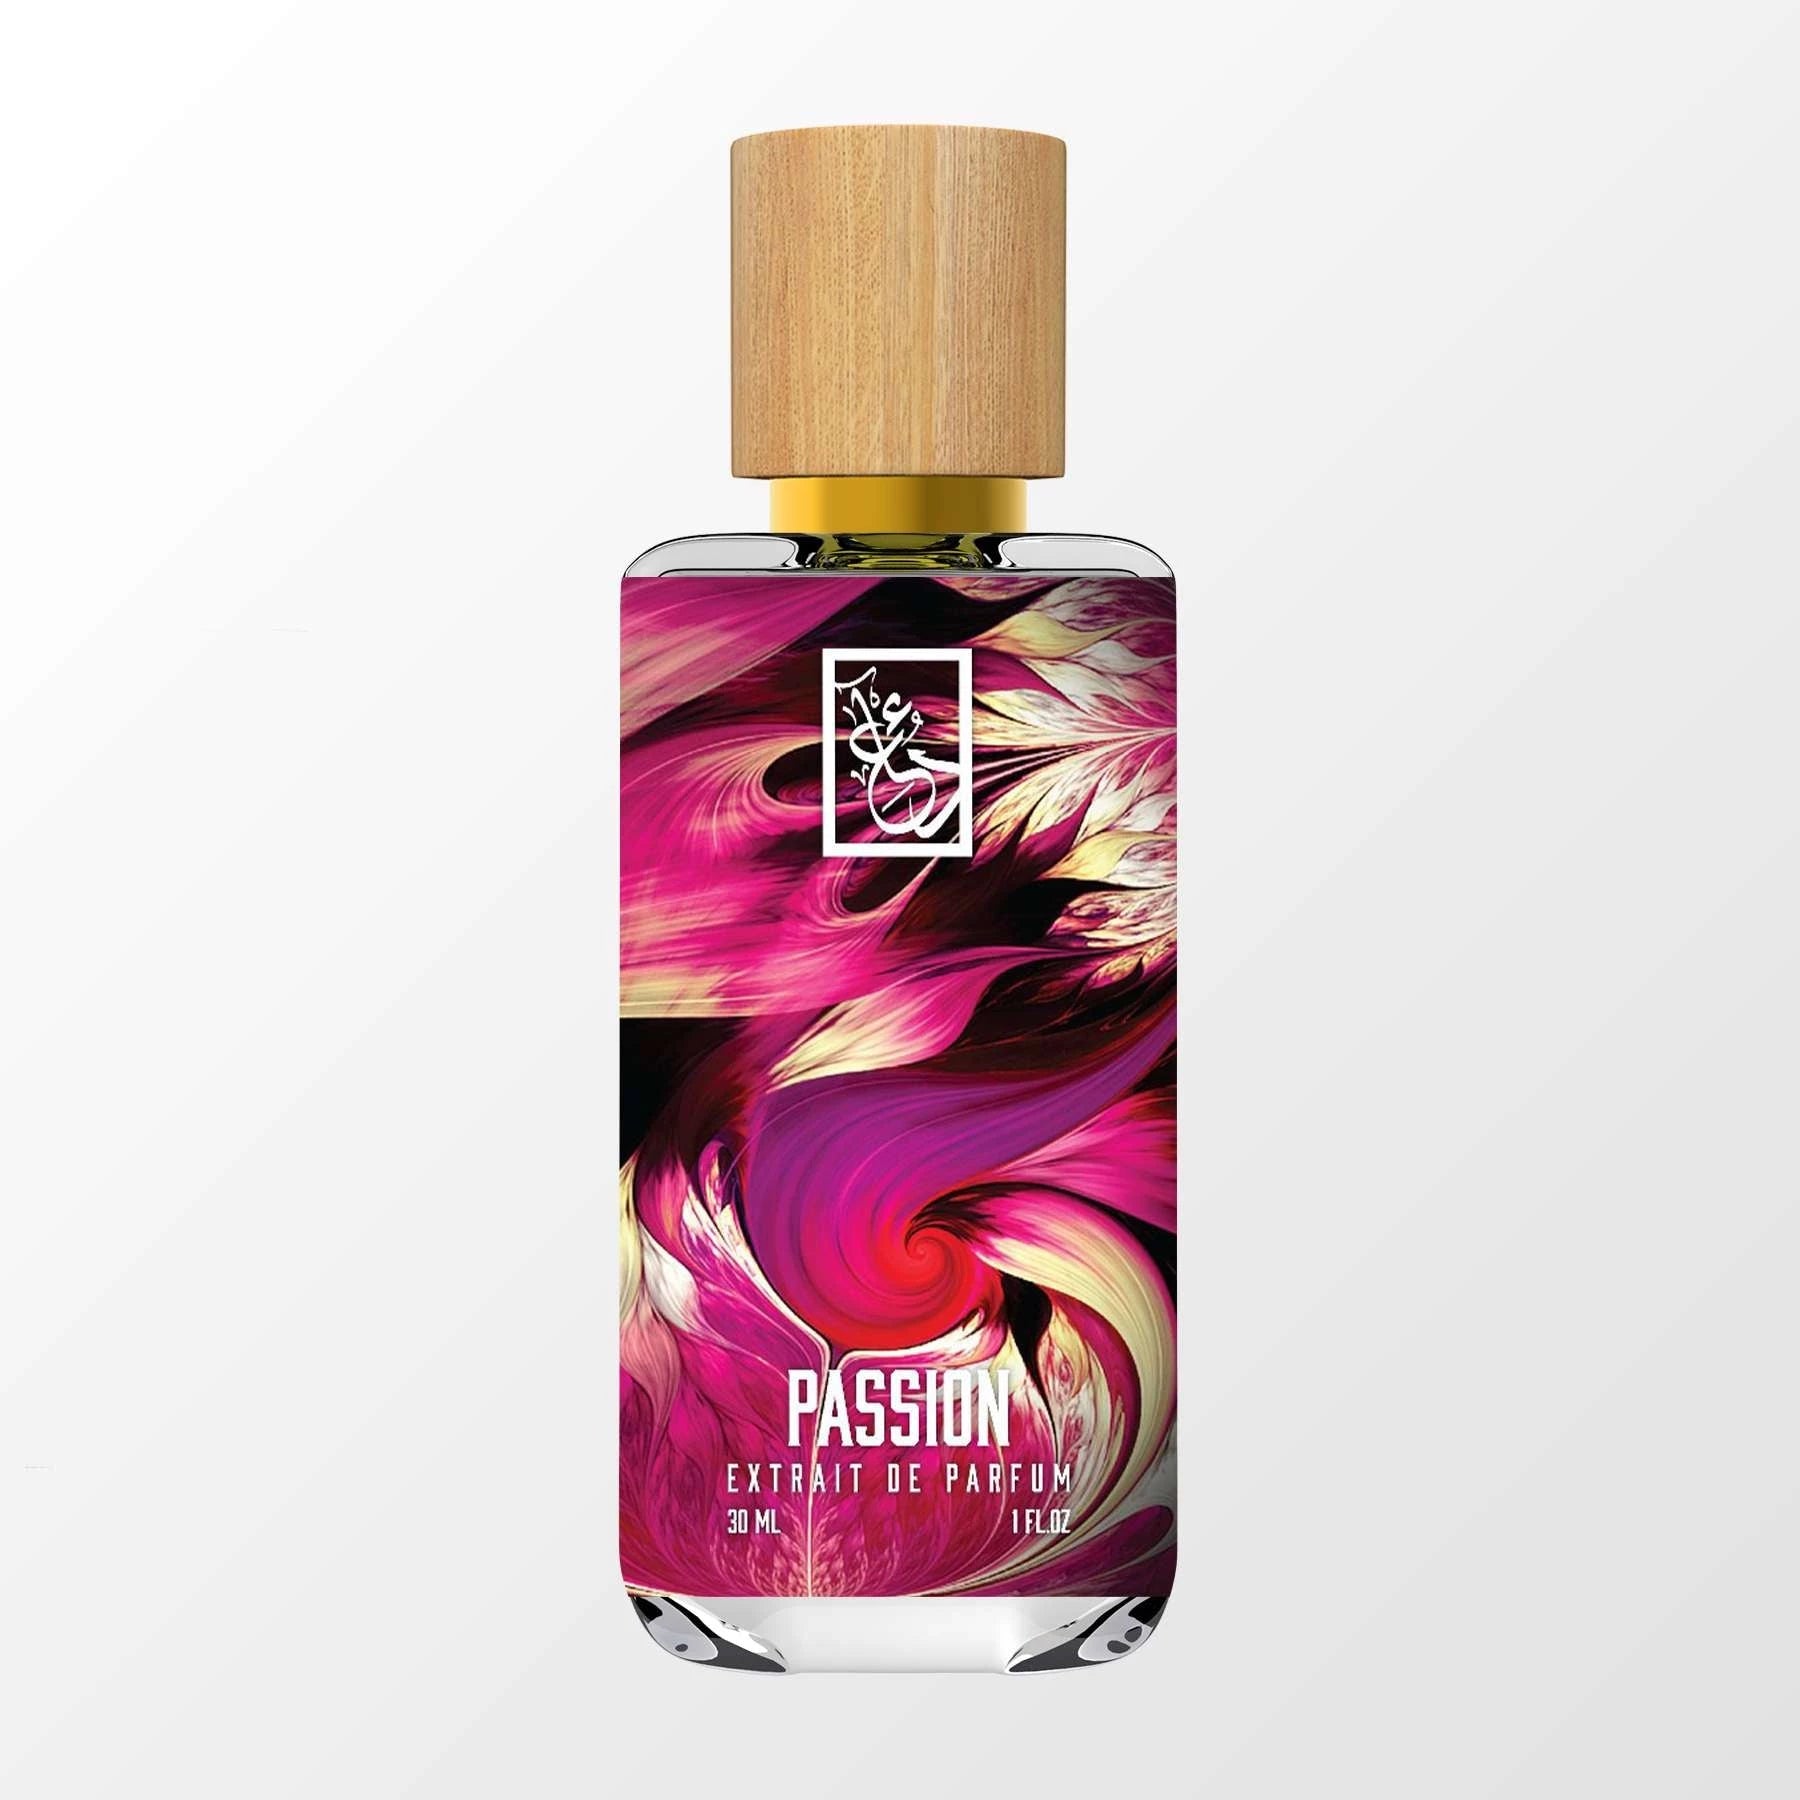 Passion - Dua Fragrances - Inspired by Ombré Leather 16 Tom Ford - Masculine Unisex Perfume - 34ml/1.1 fl oz - Extrait de Parfum